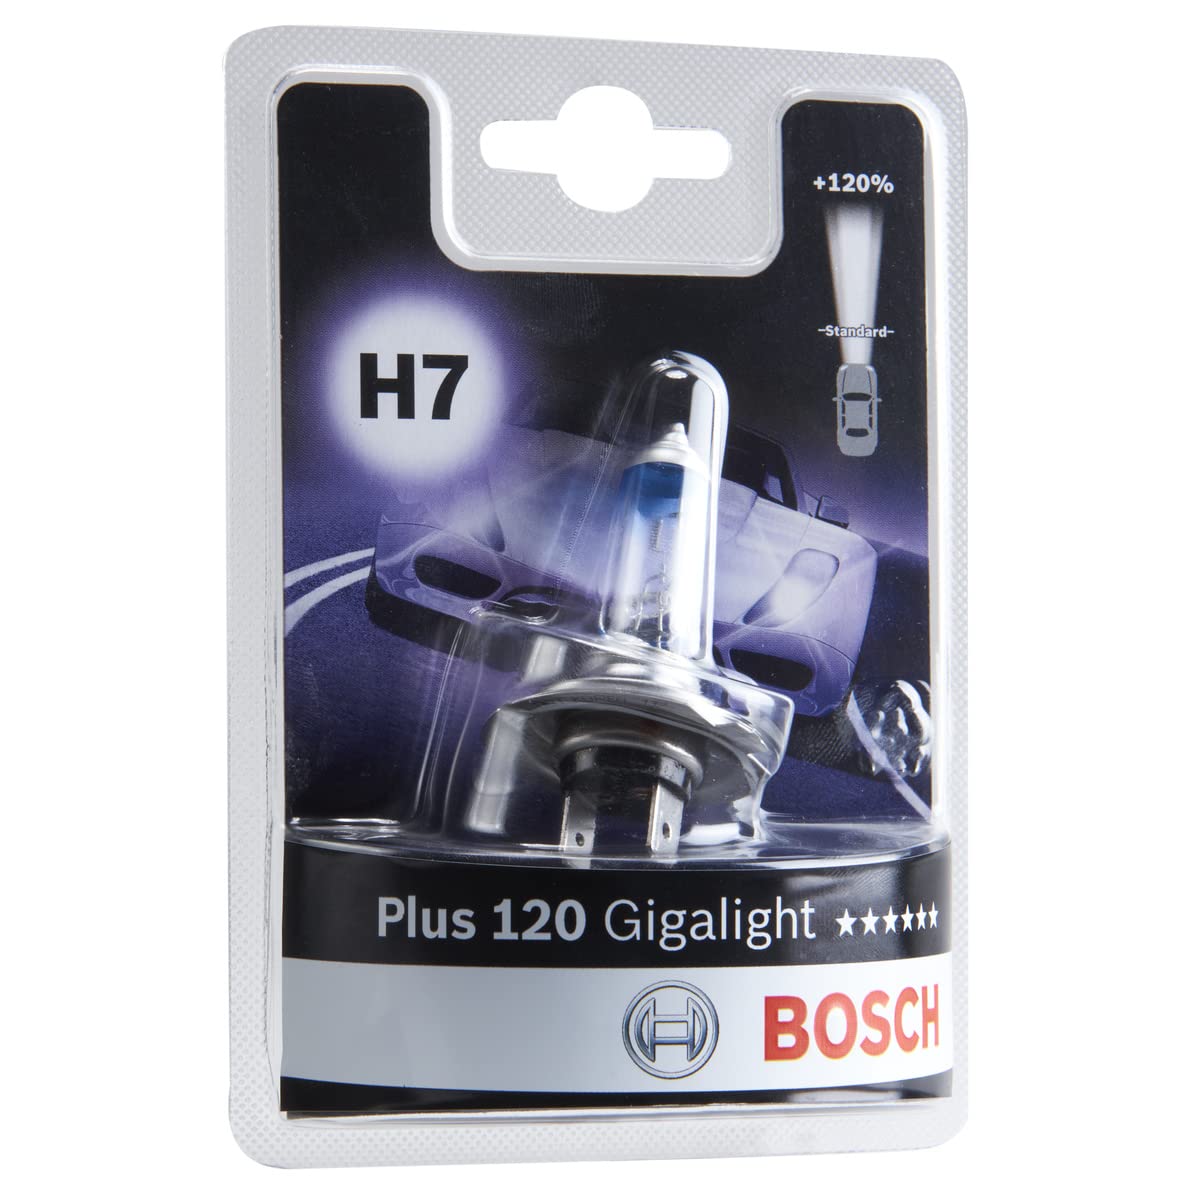 Bosch H7 Plus 120 Gigalight Lampe - 12 V 55 W PX26d - 1 Stück von Bosch Automotive